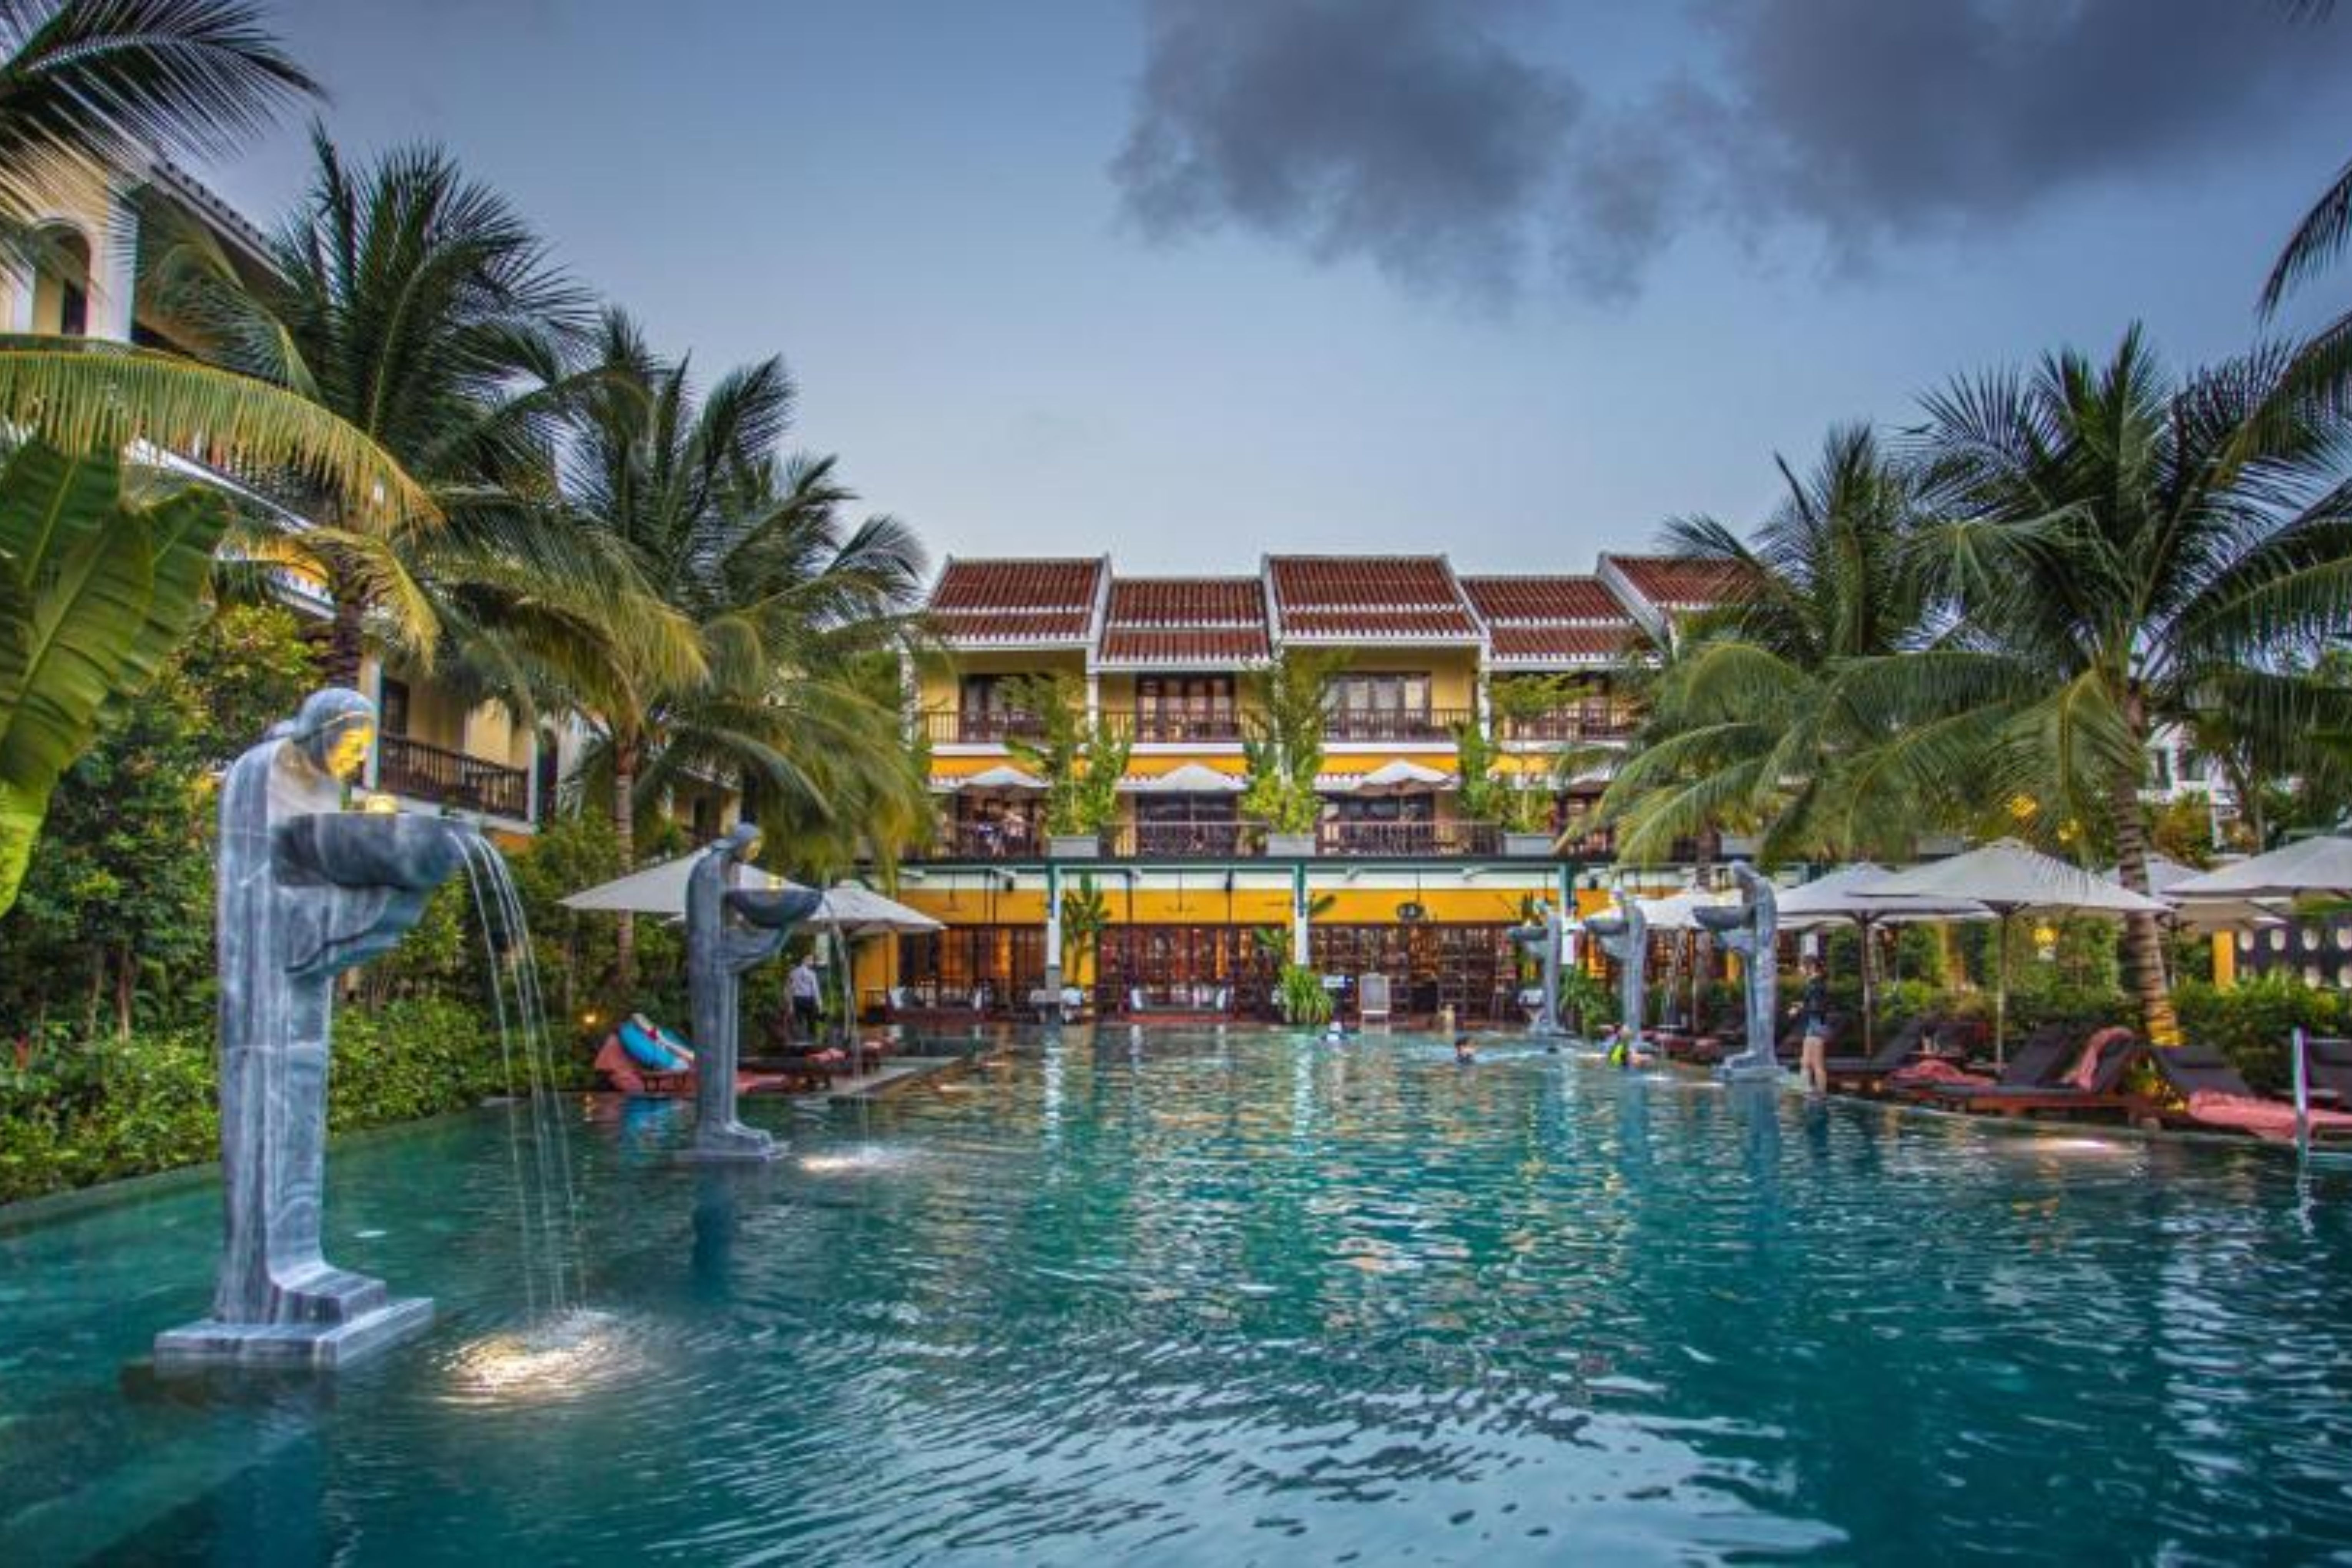 3º - La Siesta Hoi An Resort & Spa, localizado em Hoi An, na Indonésia (Reprodução)